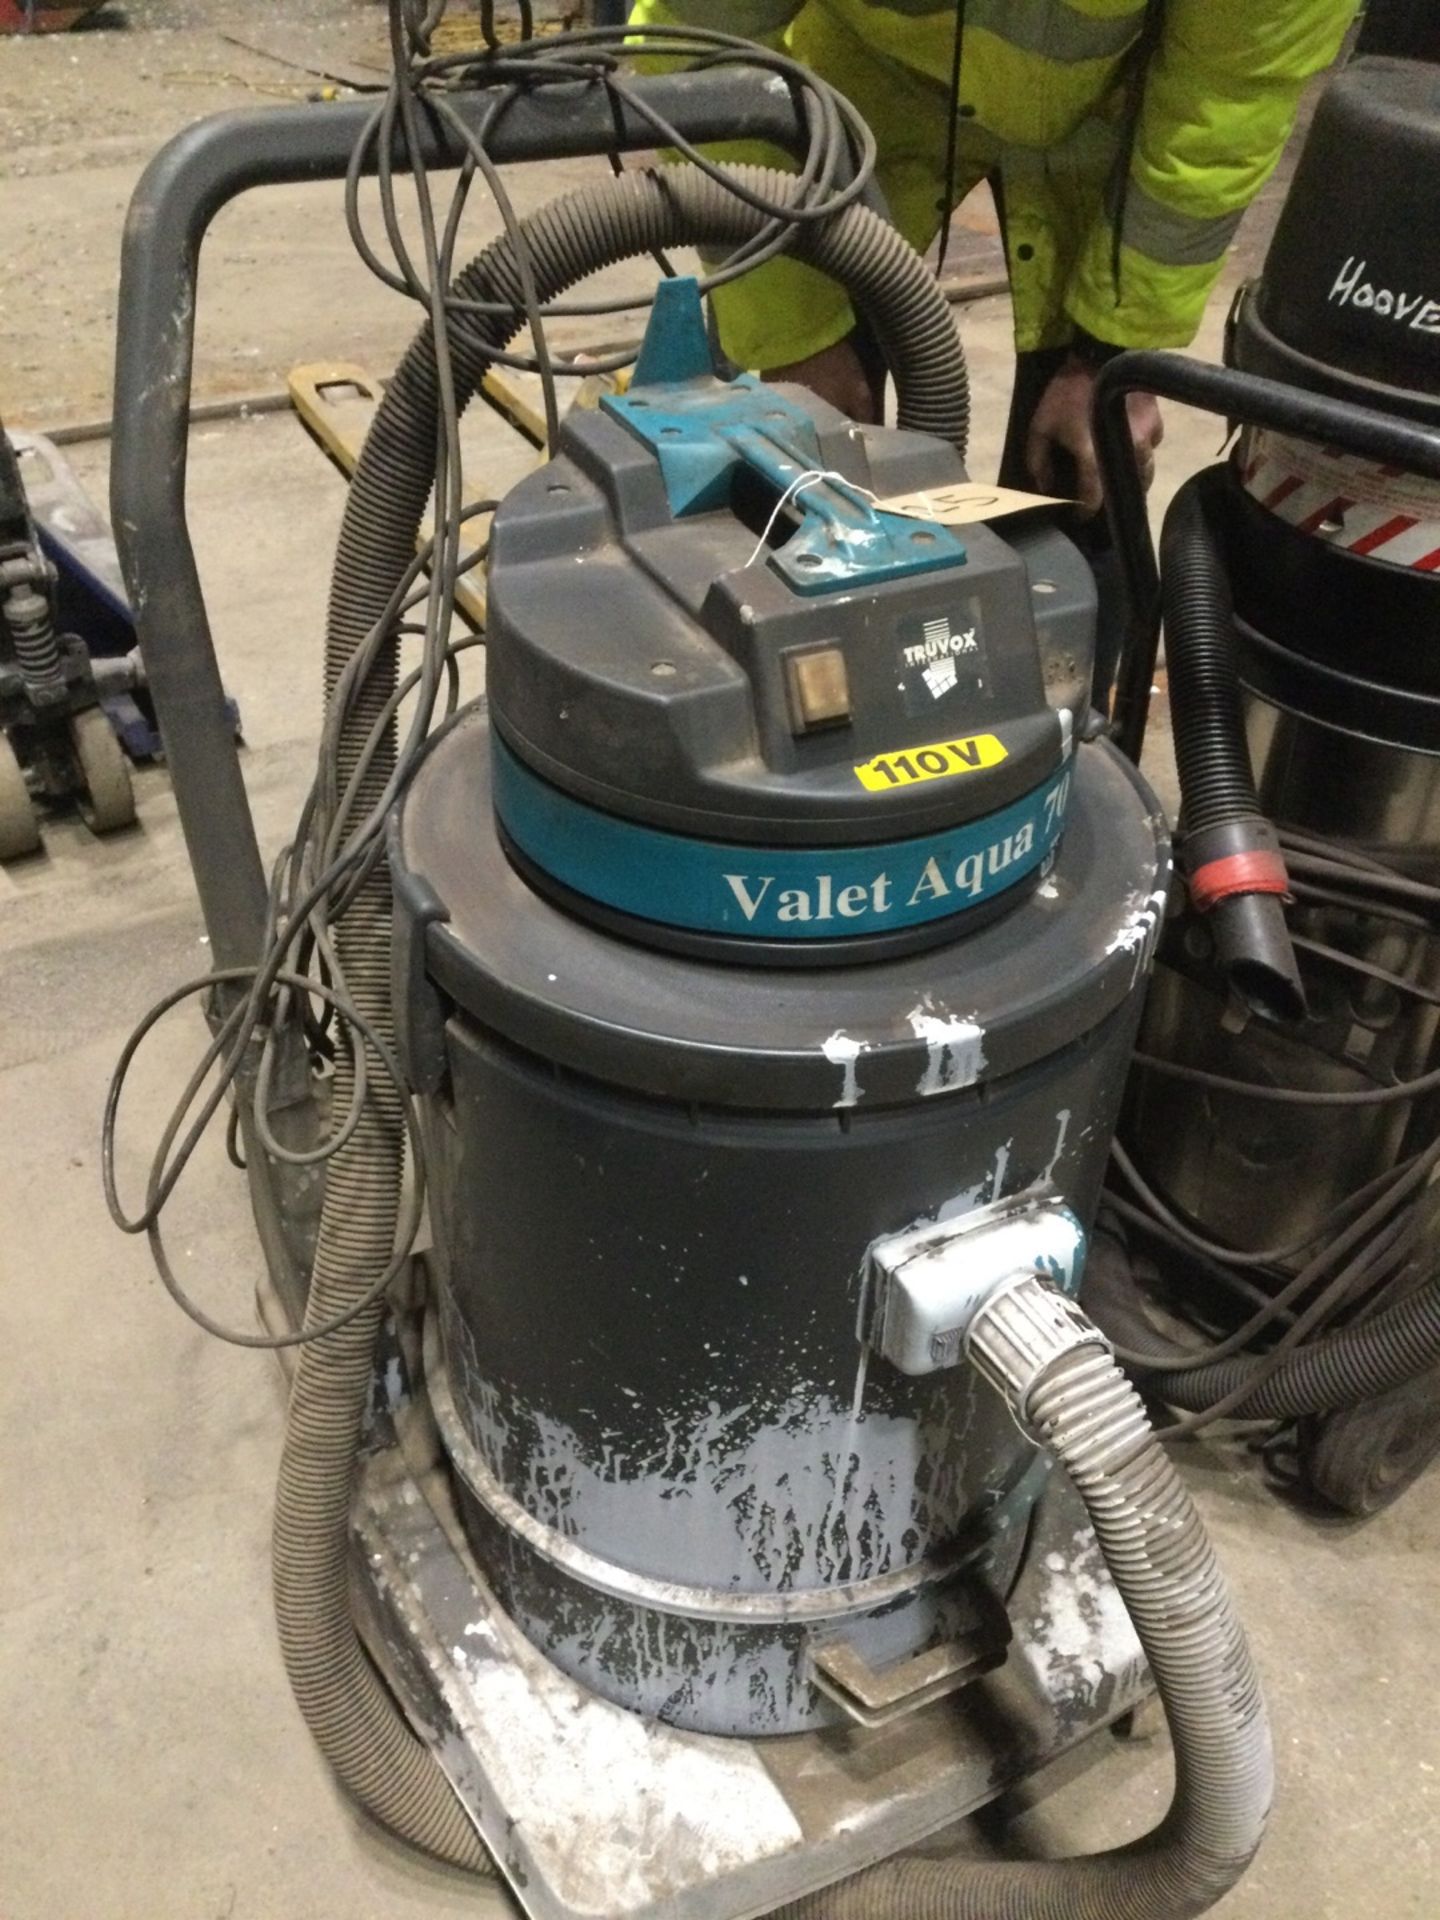 2: Industrial Vacuum Cleaners